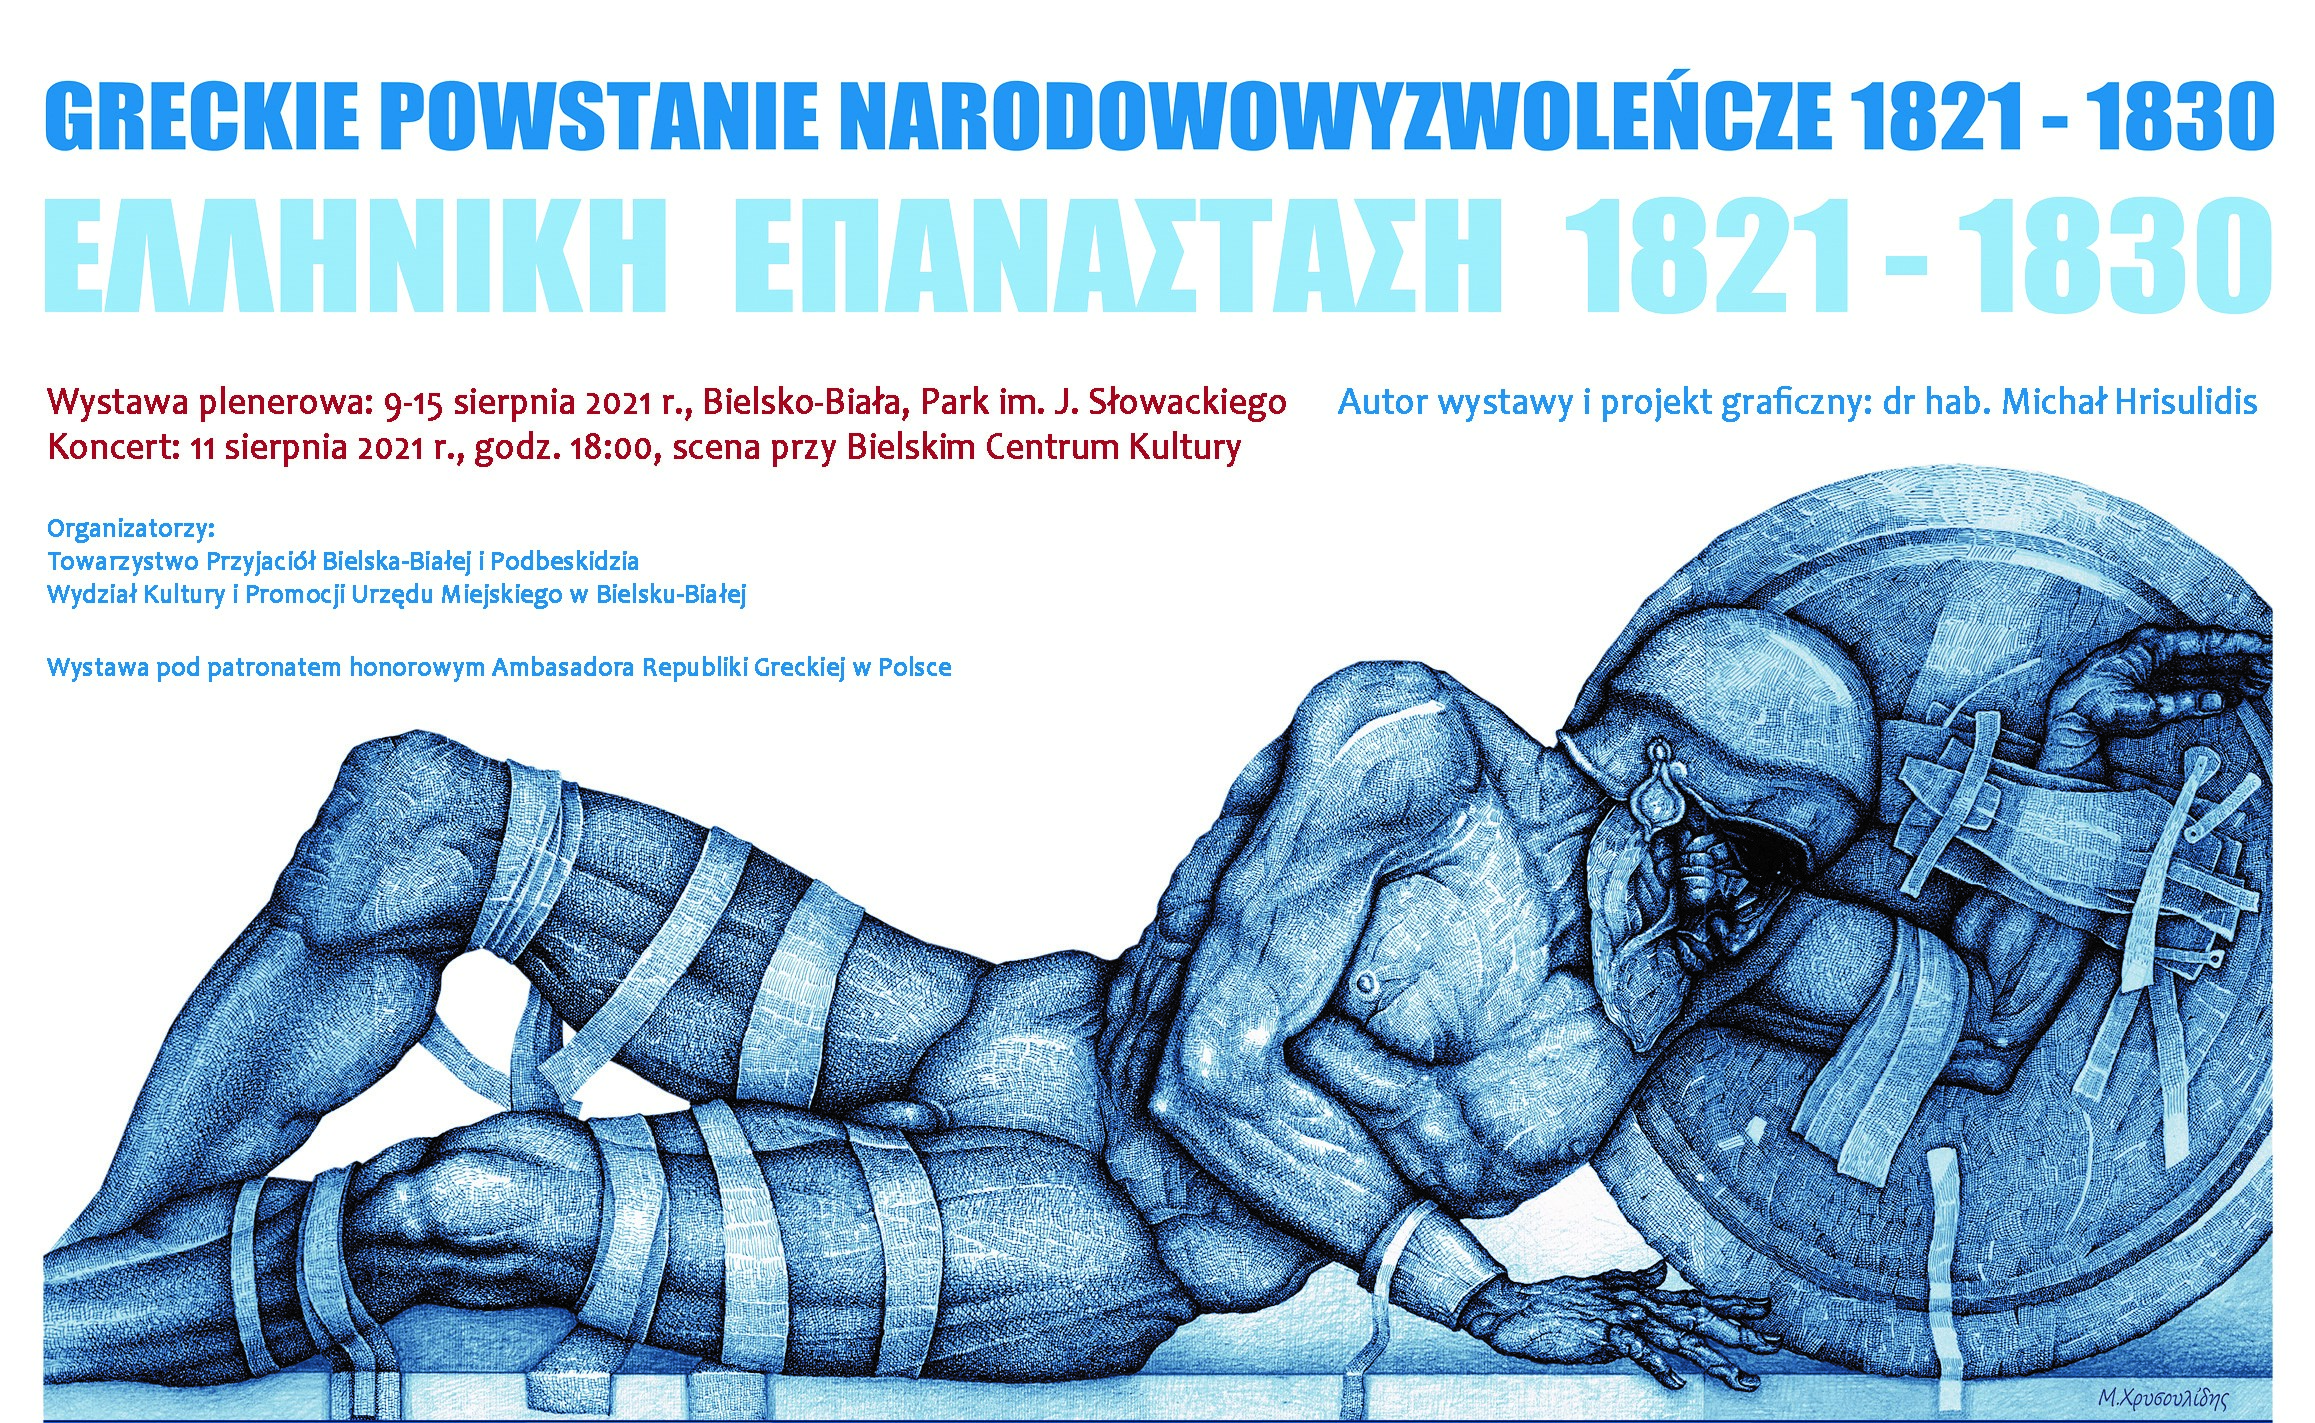  Obchody 200-lecia niepodległości Grecji Na zdjęciu plakat zapowiadający wystawę